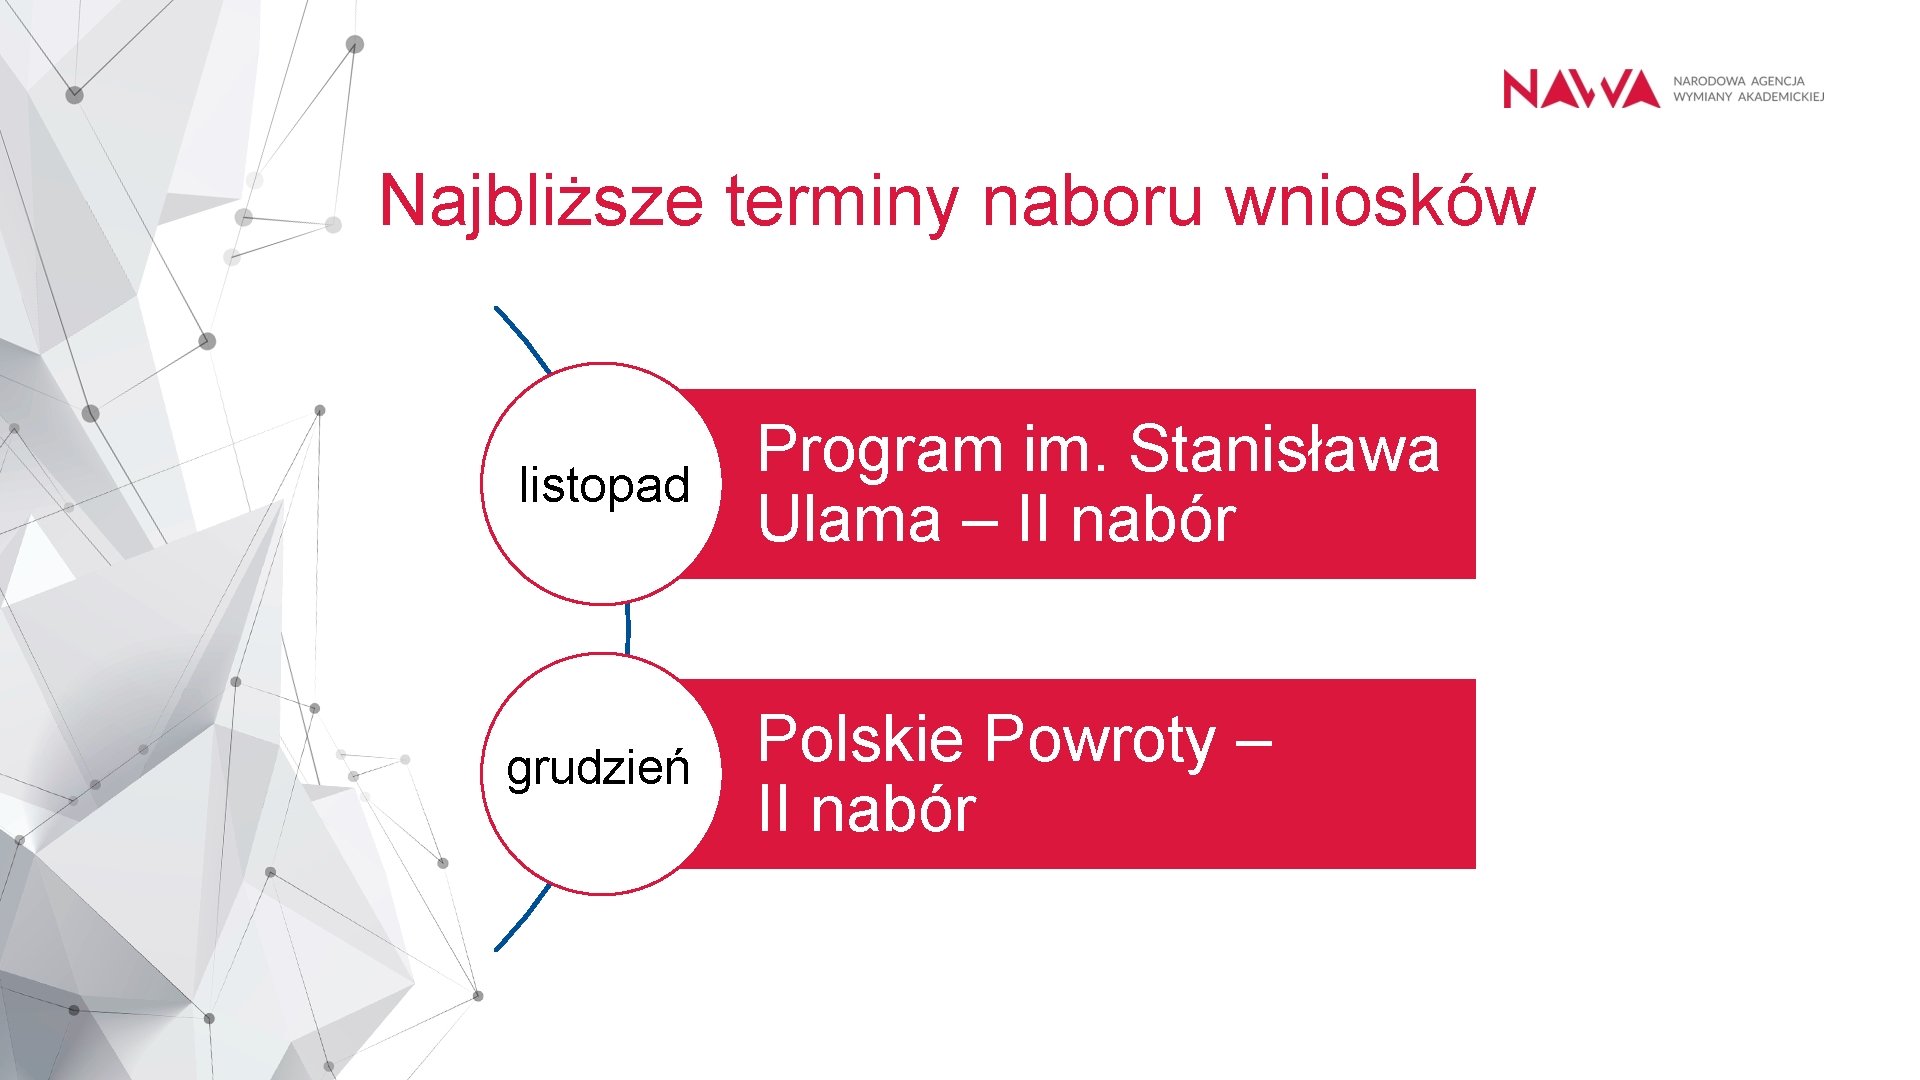 Najbliższe terminy naboru wniosków listopad Program im. Stanisława Ulama – II nabór grudzień Polskie